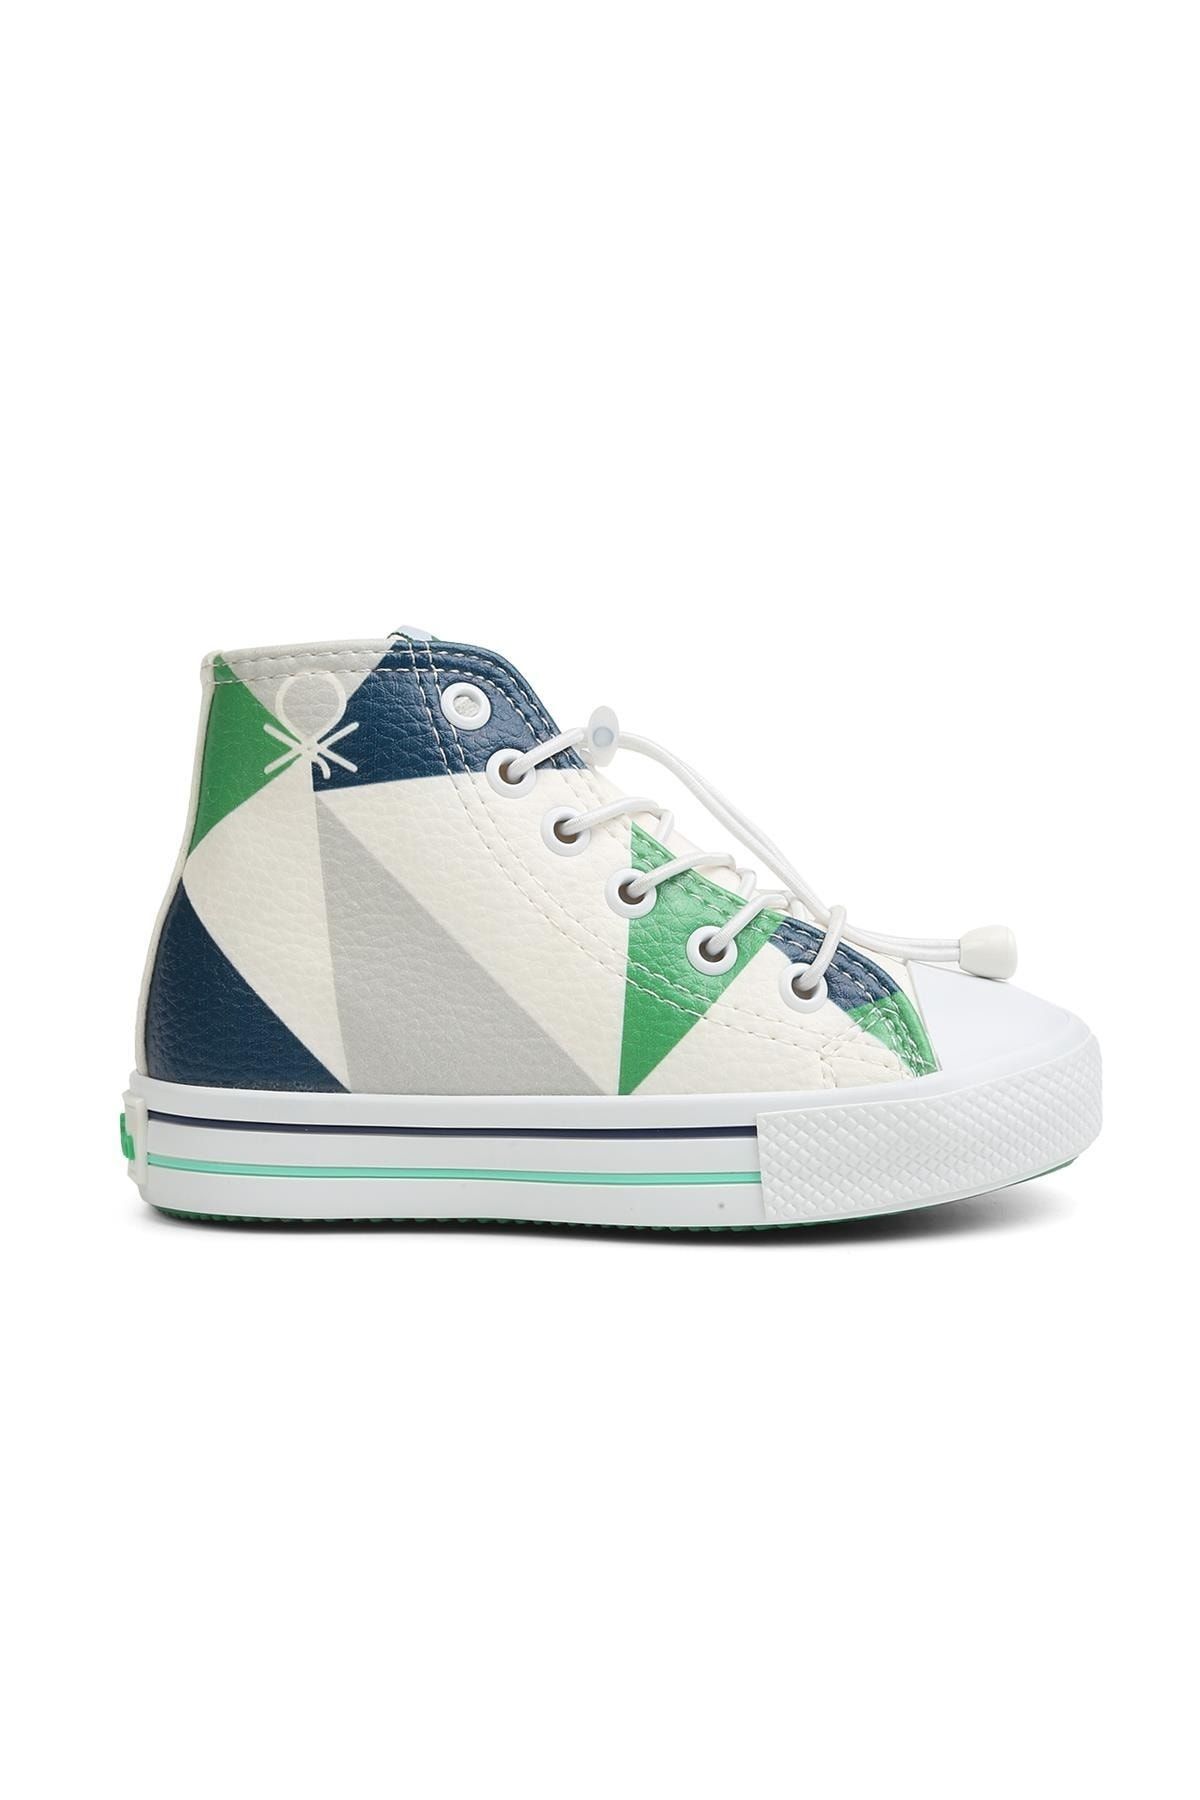 Benetton ® | Bn-30809- 3394 Lacivert Yesil - Çocuk Spor Ayakkabı